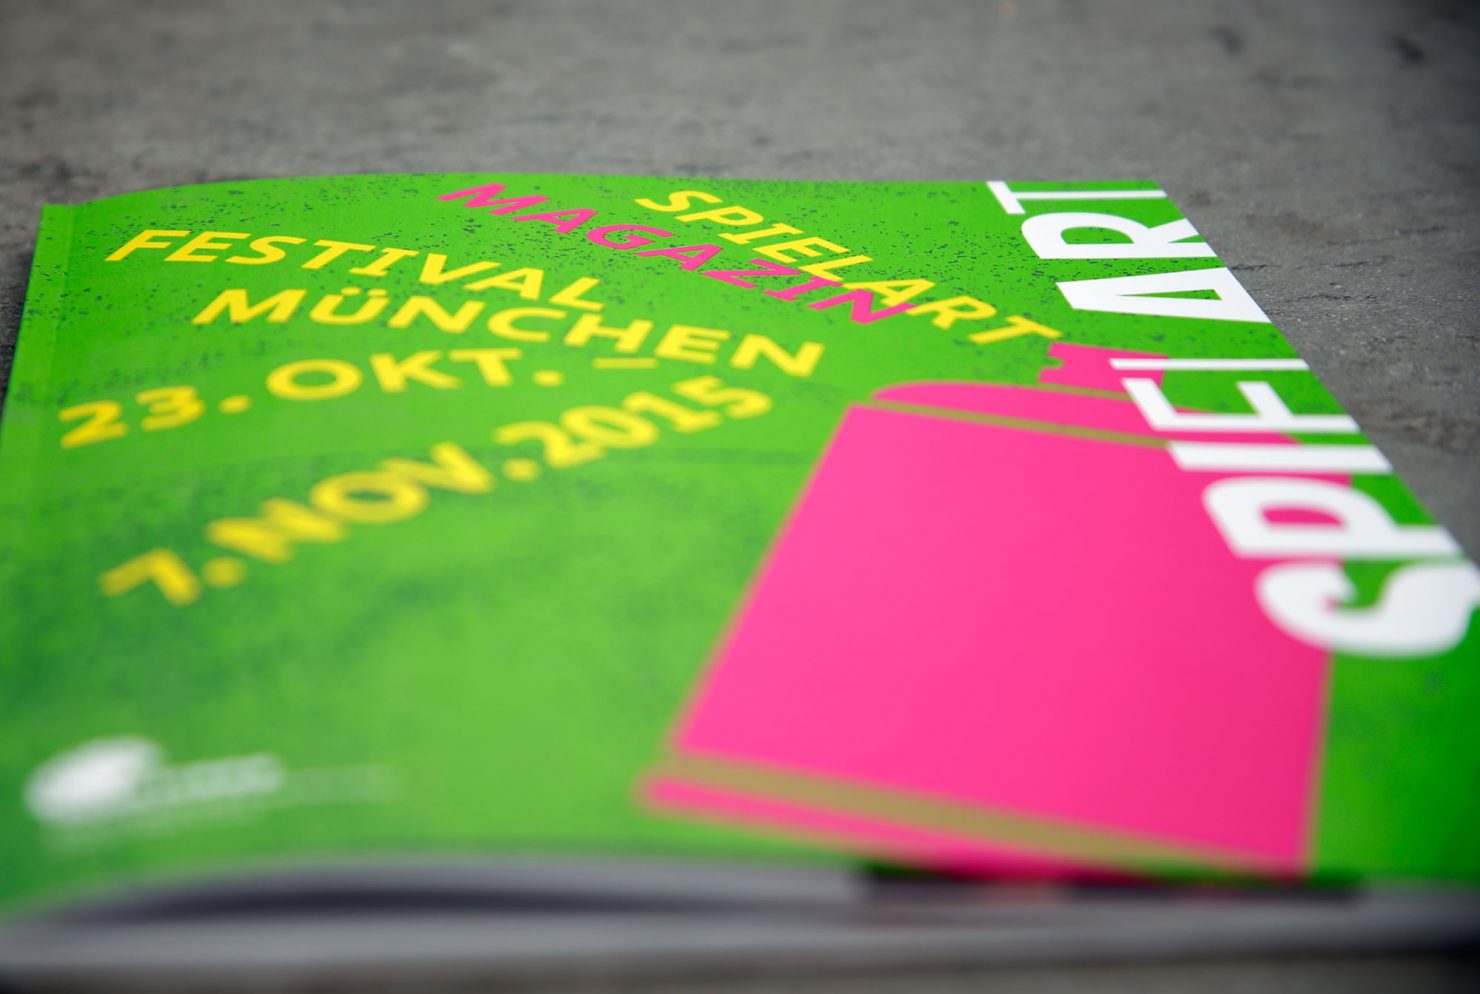 Titel Programmmagazin corporatedesign spielart theaterfestival München 2015